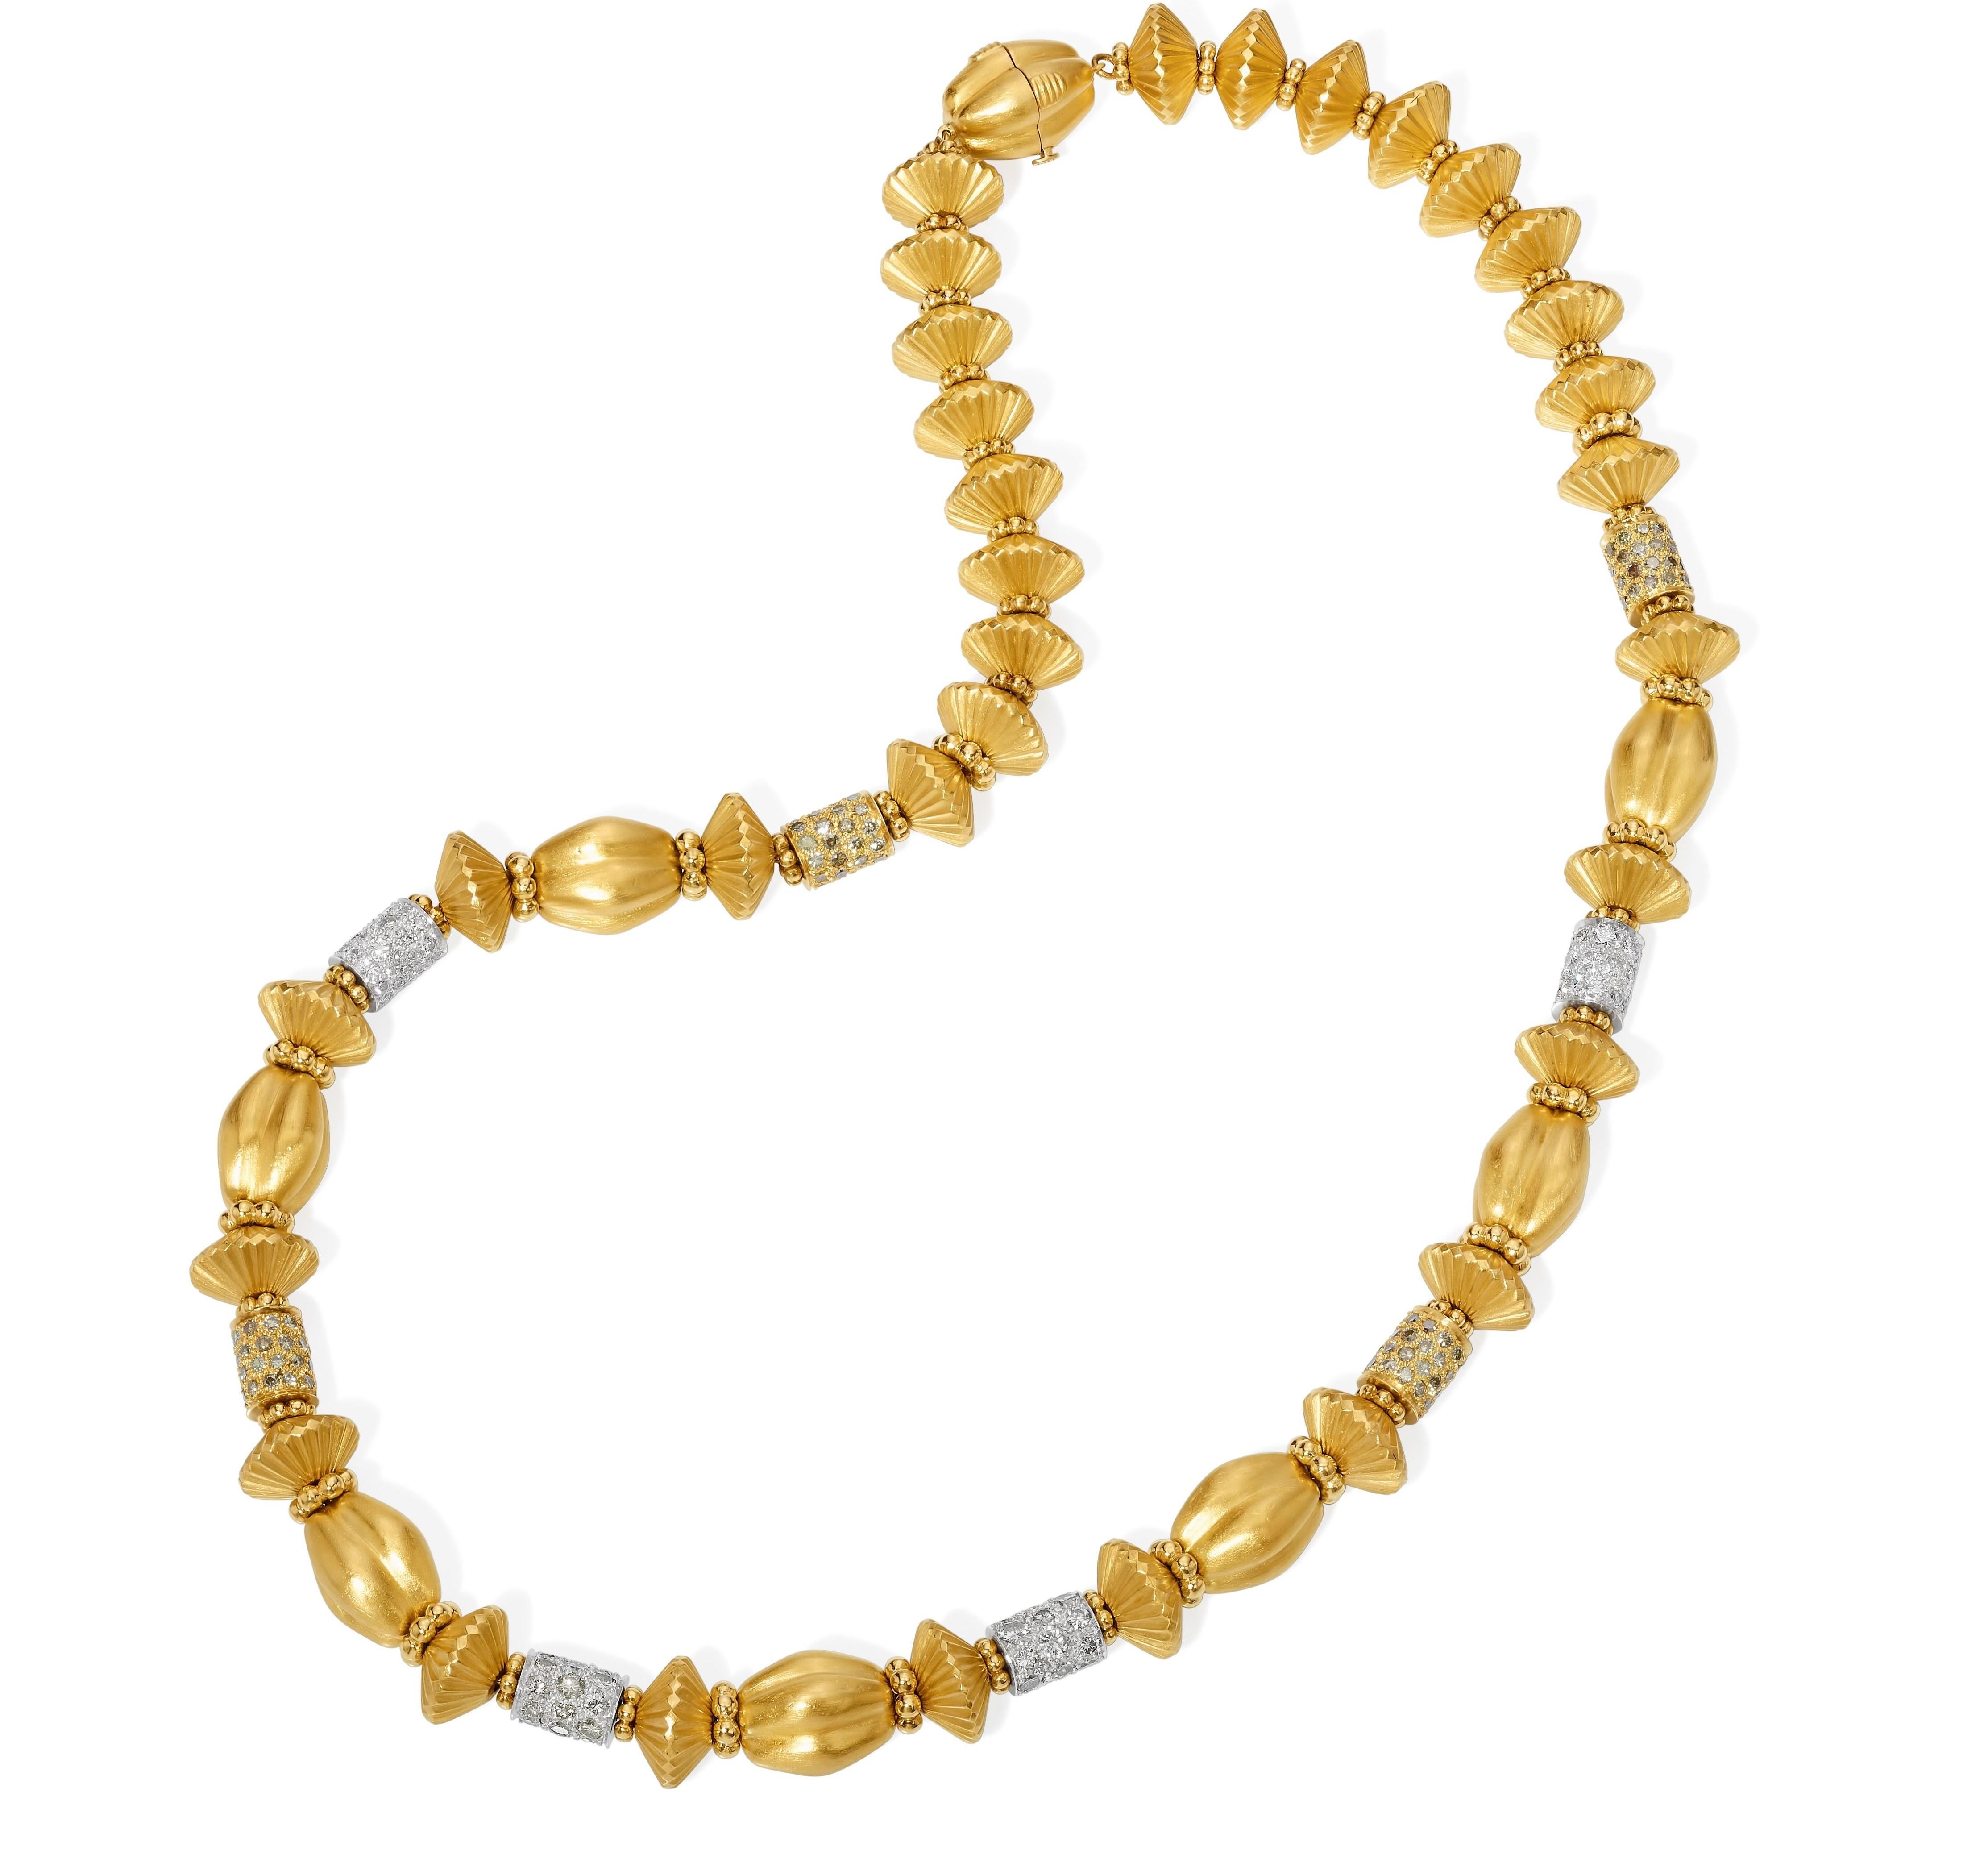 Aus der Eiseman Estate Jewelry Collection, Rondell-Halskette aus 22 Karat Gelbgold mit gelben und weißen Diamanten. Diese Halskette ist mit 96 runden Diamanten im Brillantschliff mit einem Gesamtgewicht von 4,80 Karat besetzt. Die Diamanten haben